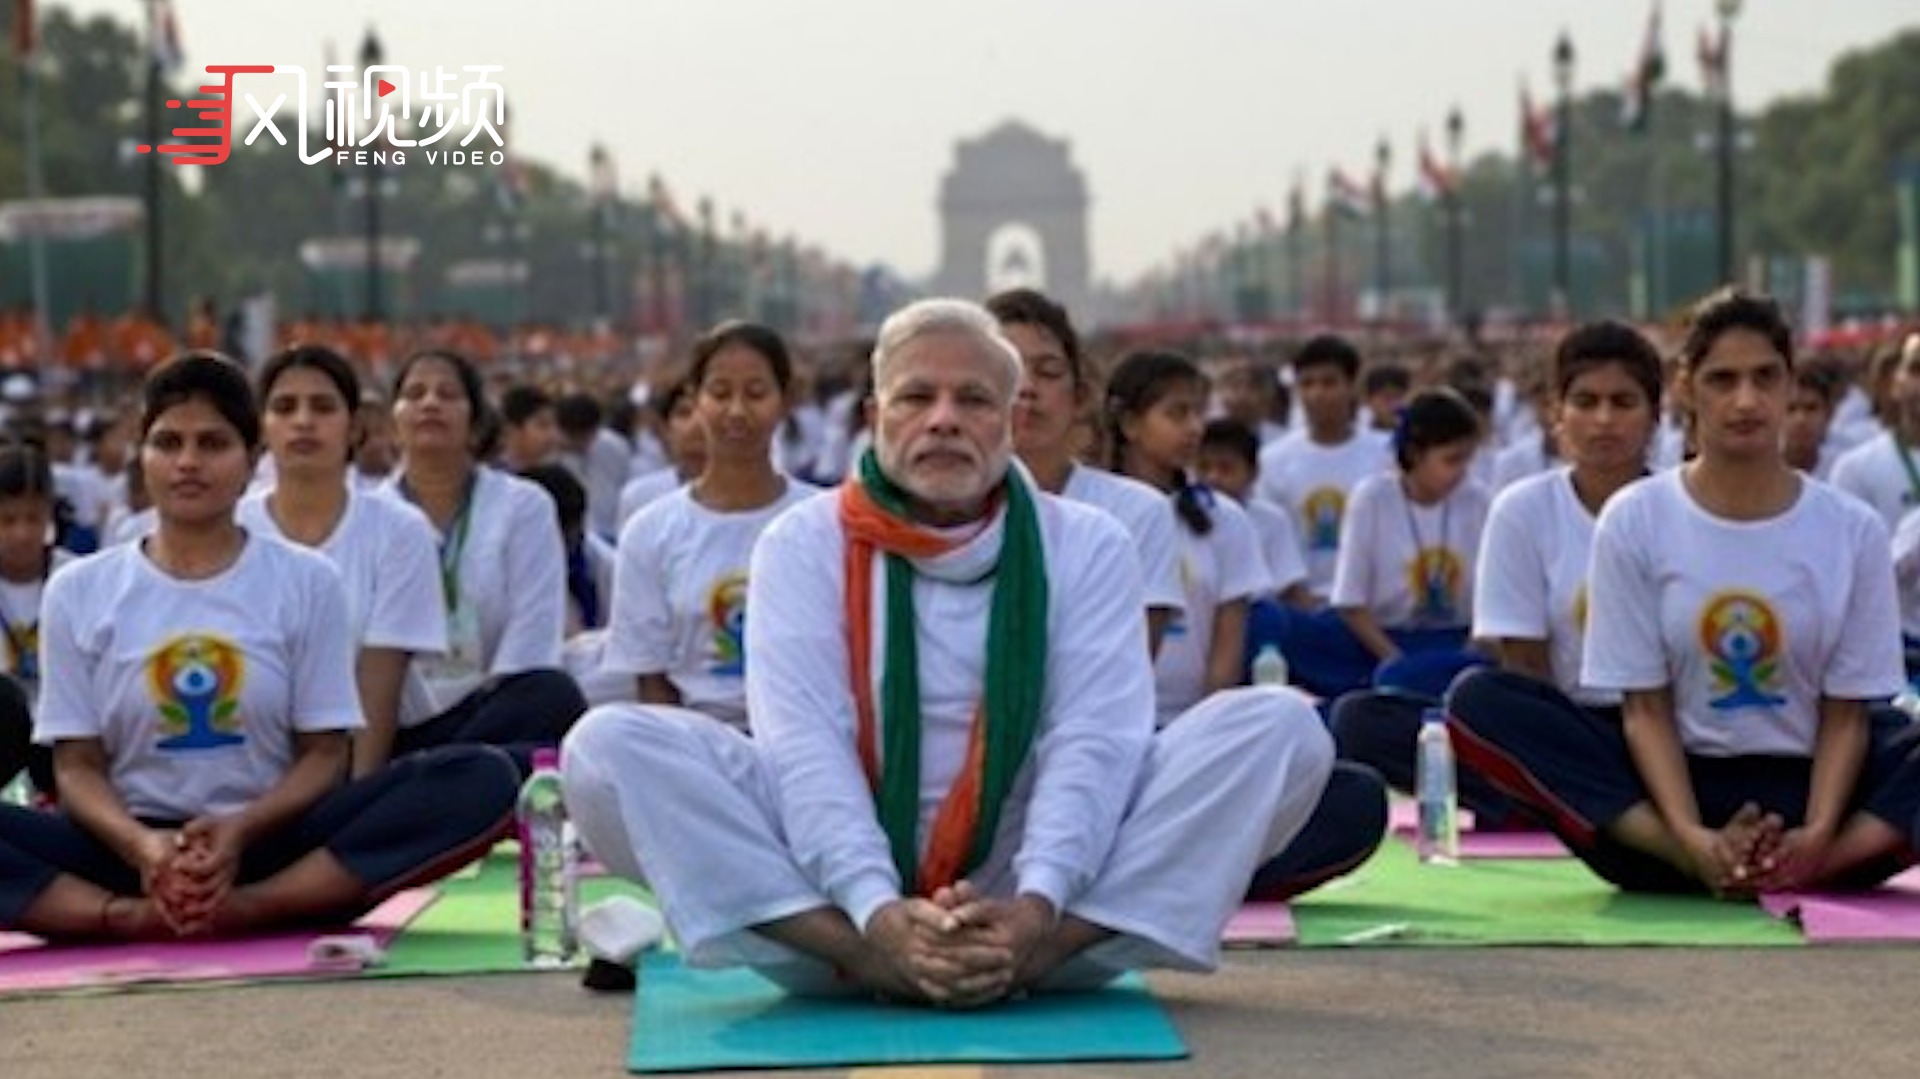 印度人有多喜欢瑜伽有官员称反对瑜伽的人应当滚出印度